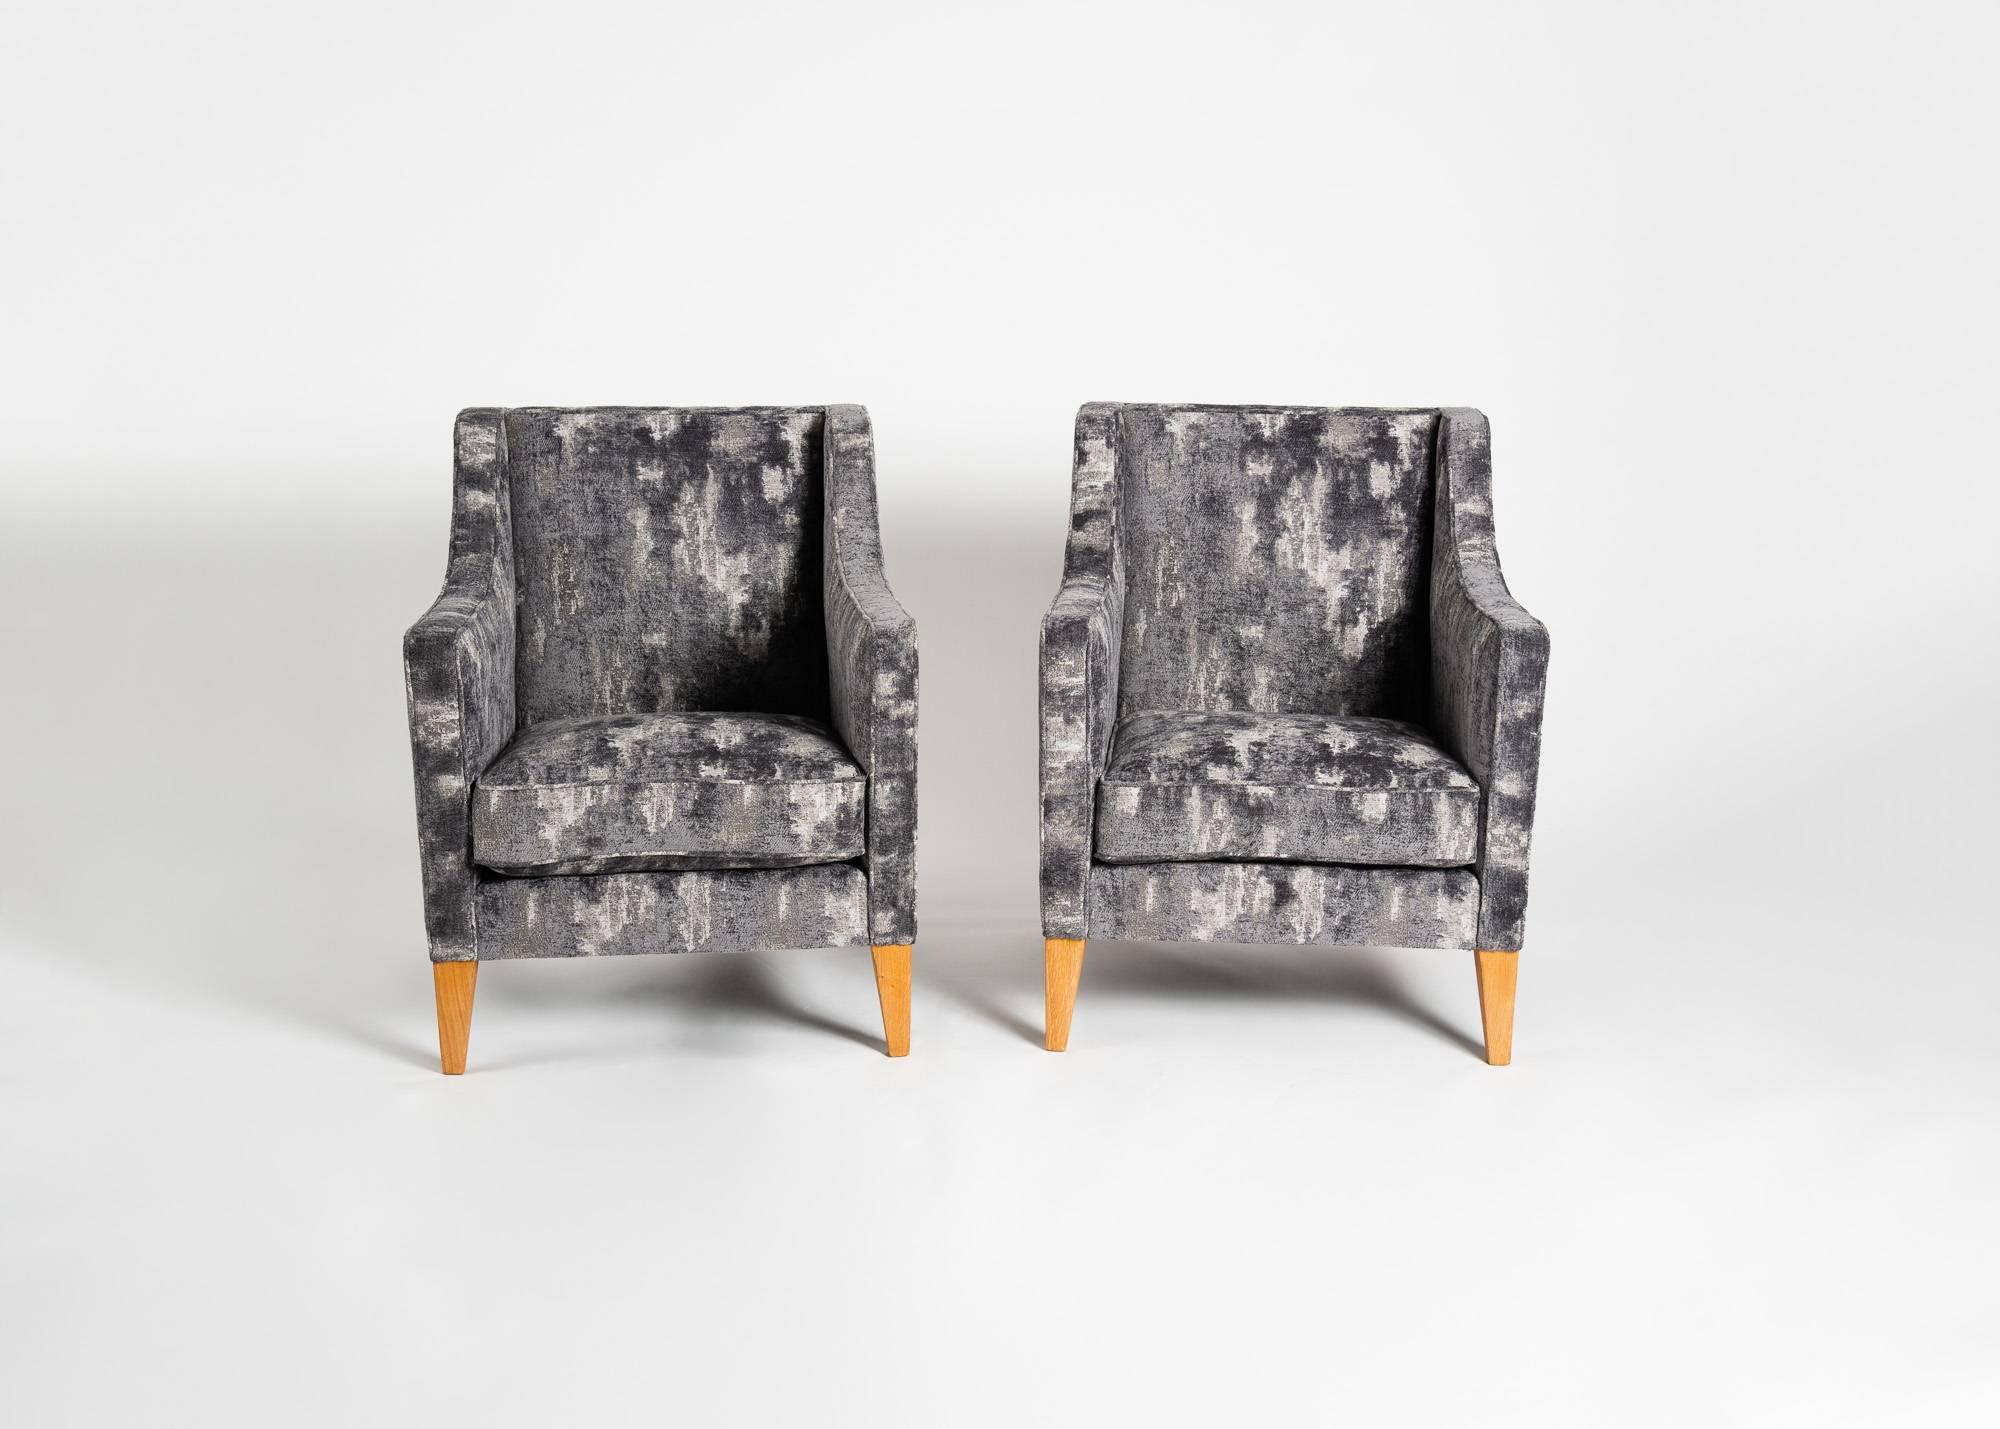 Œuvre typique du milieu du siècle français, cette paire de fauteuils du maître Jacques Quinet présente des éléments identifiables de son style, les arêtes carrées, les pieds légèrement effilés et la sensibilité géométrique.